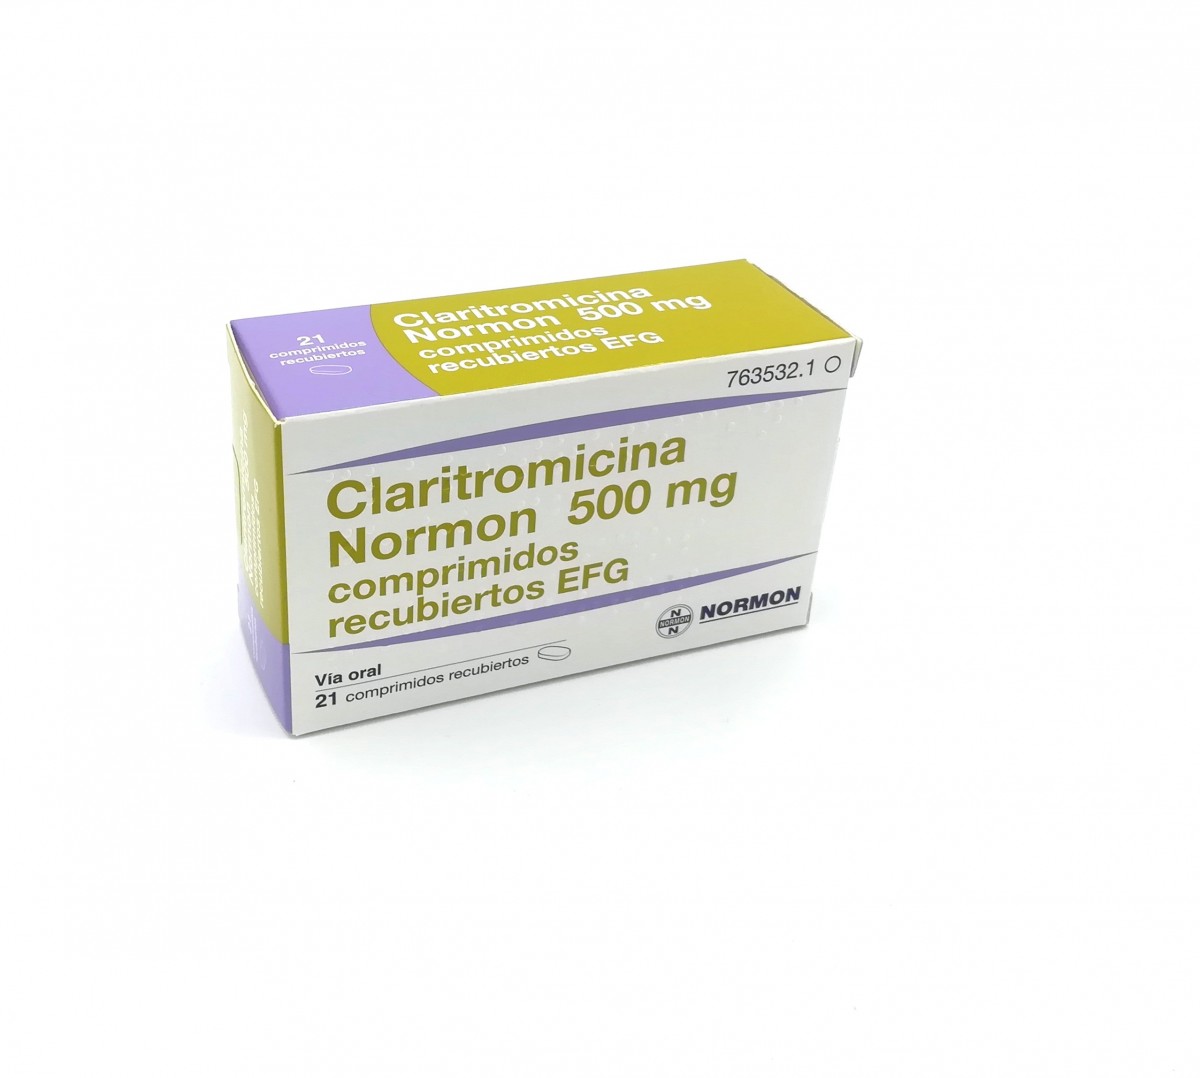 CLARITROMICINA NORMON 500 mg COMPRIMIDOS RECUBIERTOS EFG, 14 comprimidos fotografía del envase.